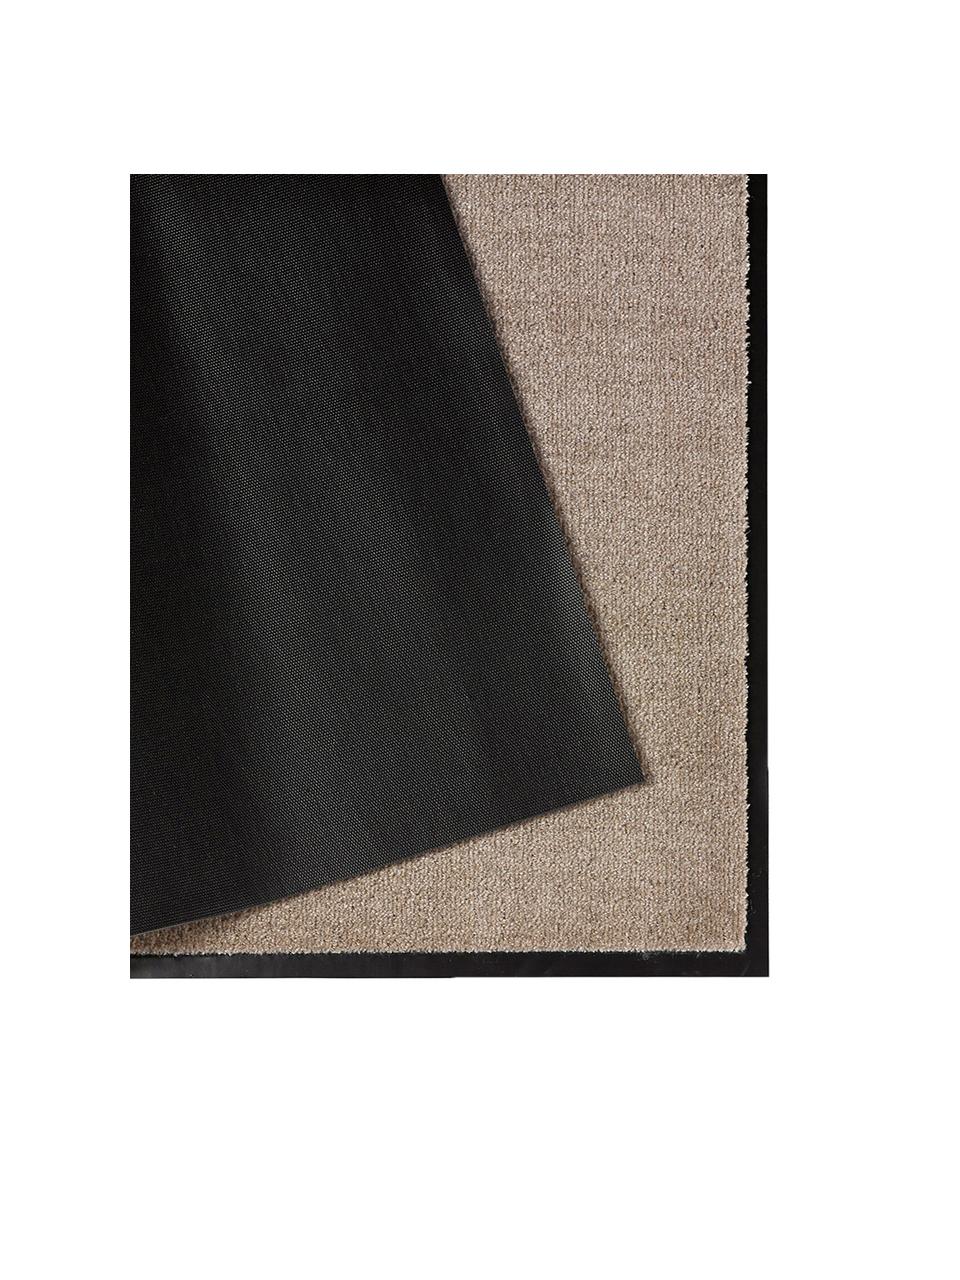 Zerbino in poliammide Milo, Taupe, nero, Larg. 58 x Lung. 90 cm